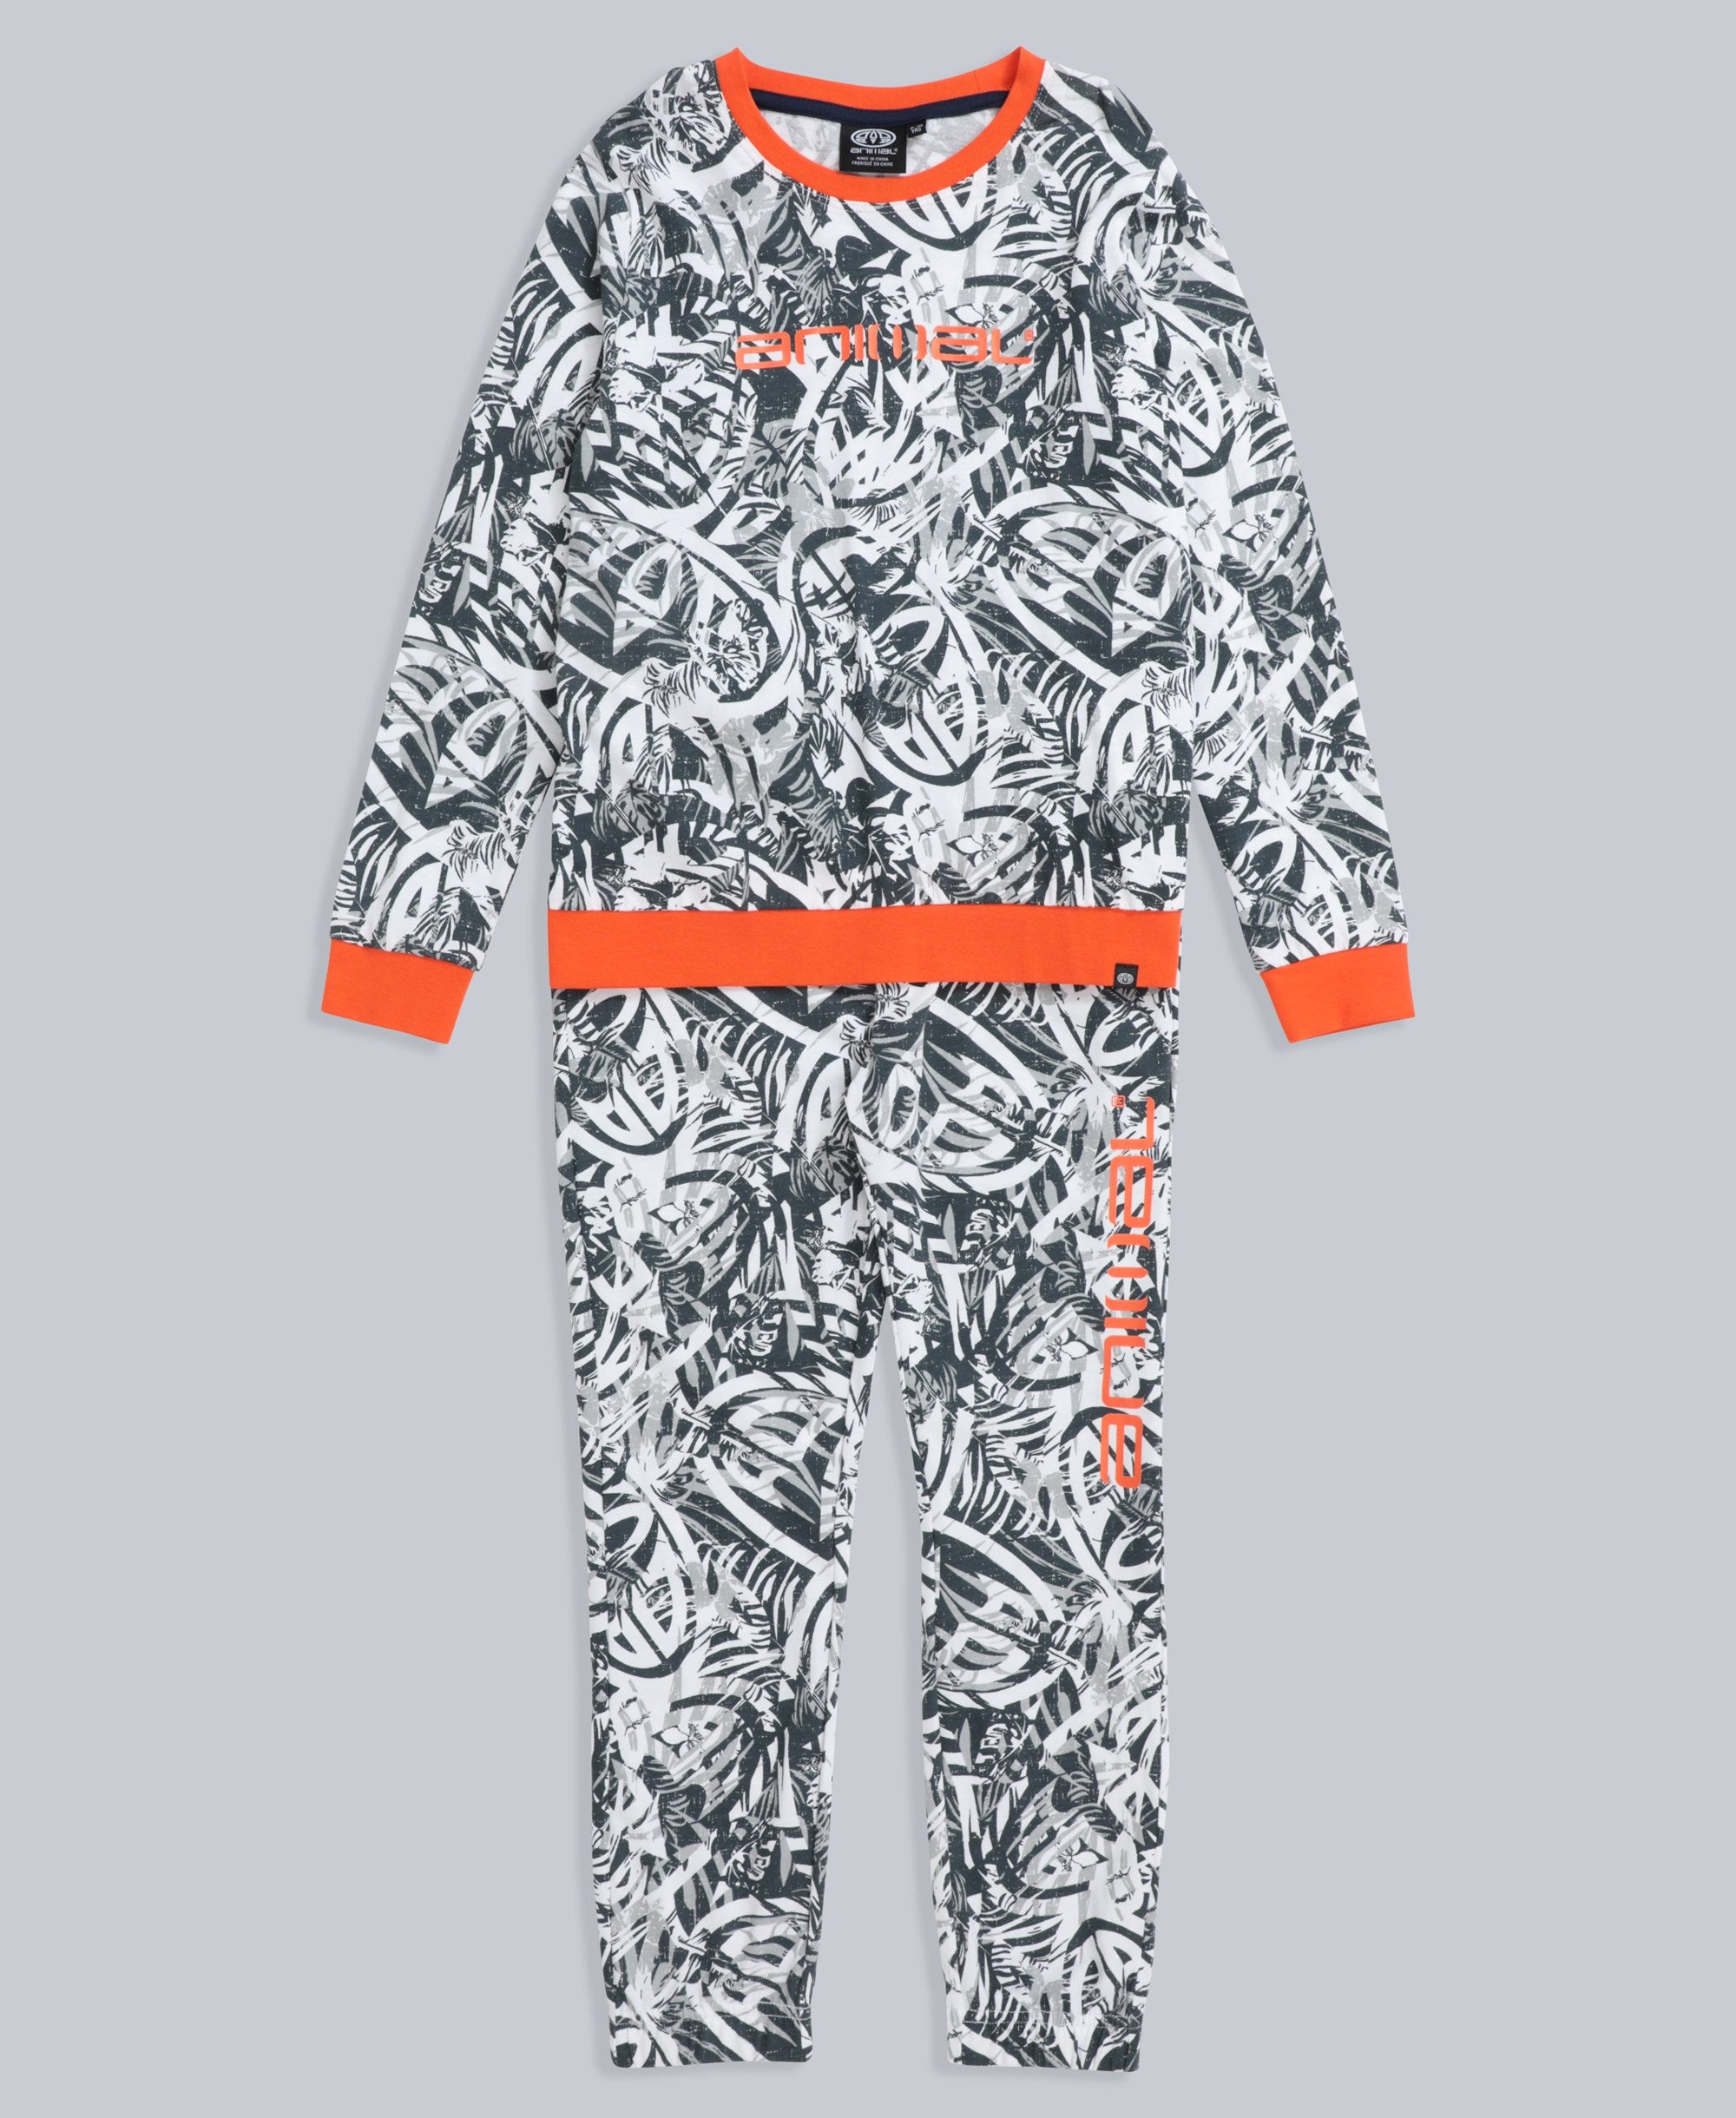 Doze Kids Pyjama Set - Grey